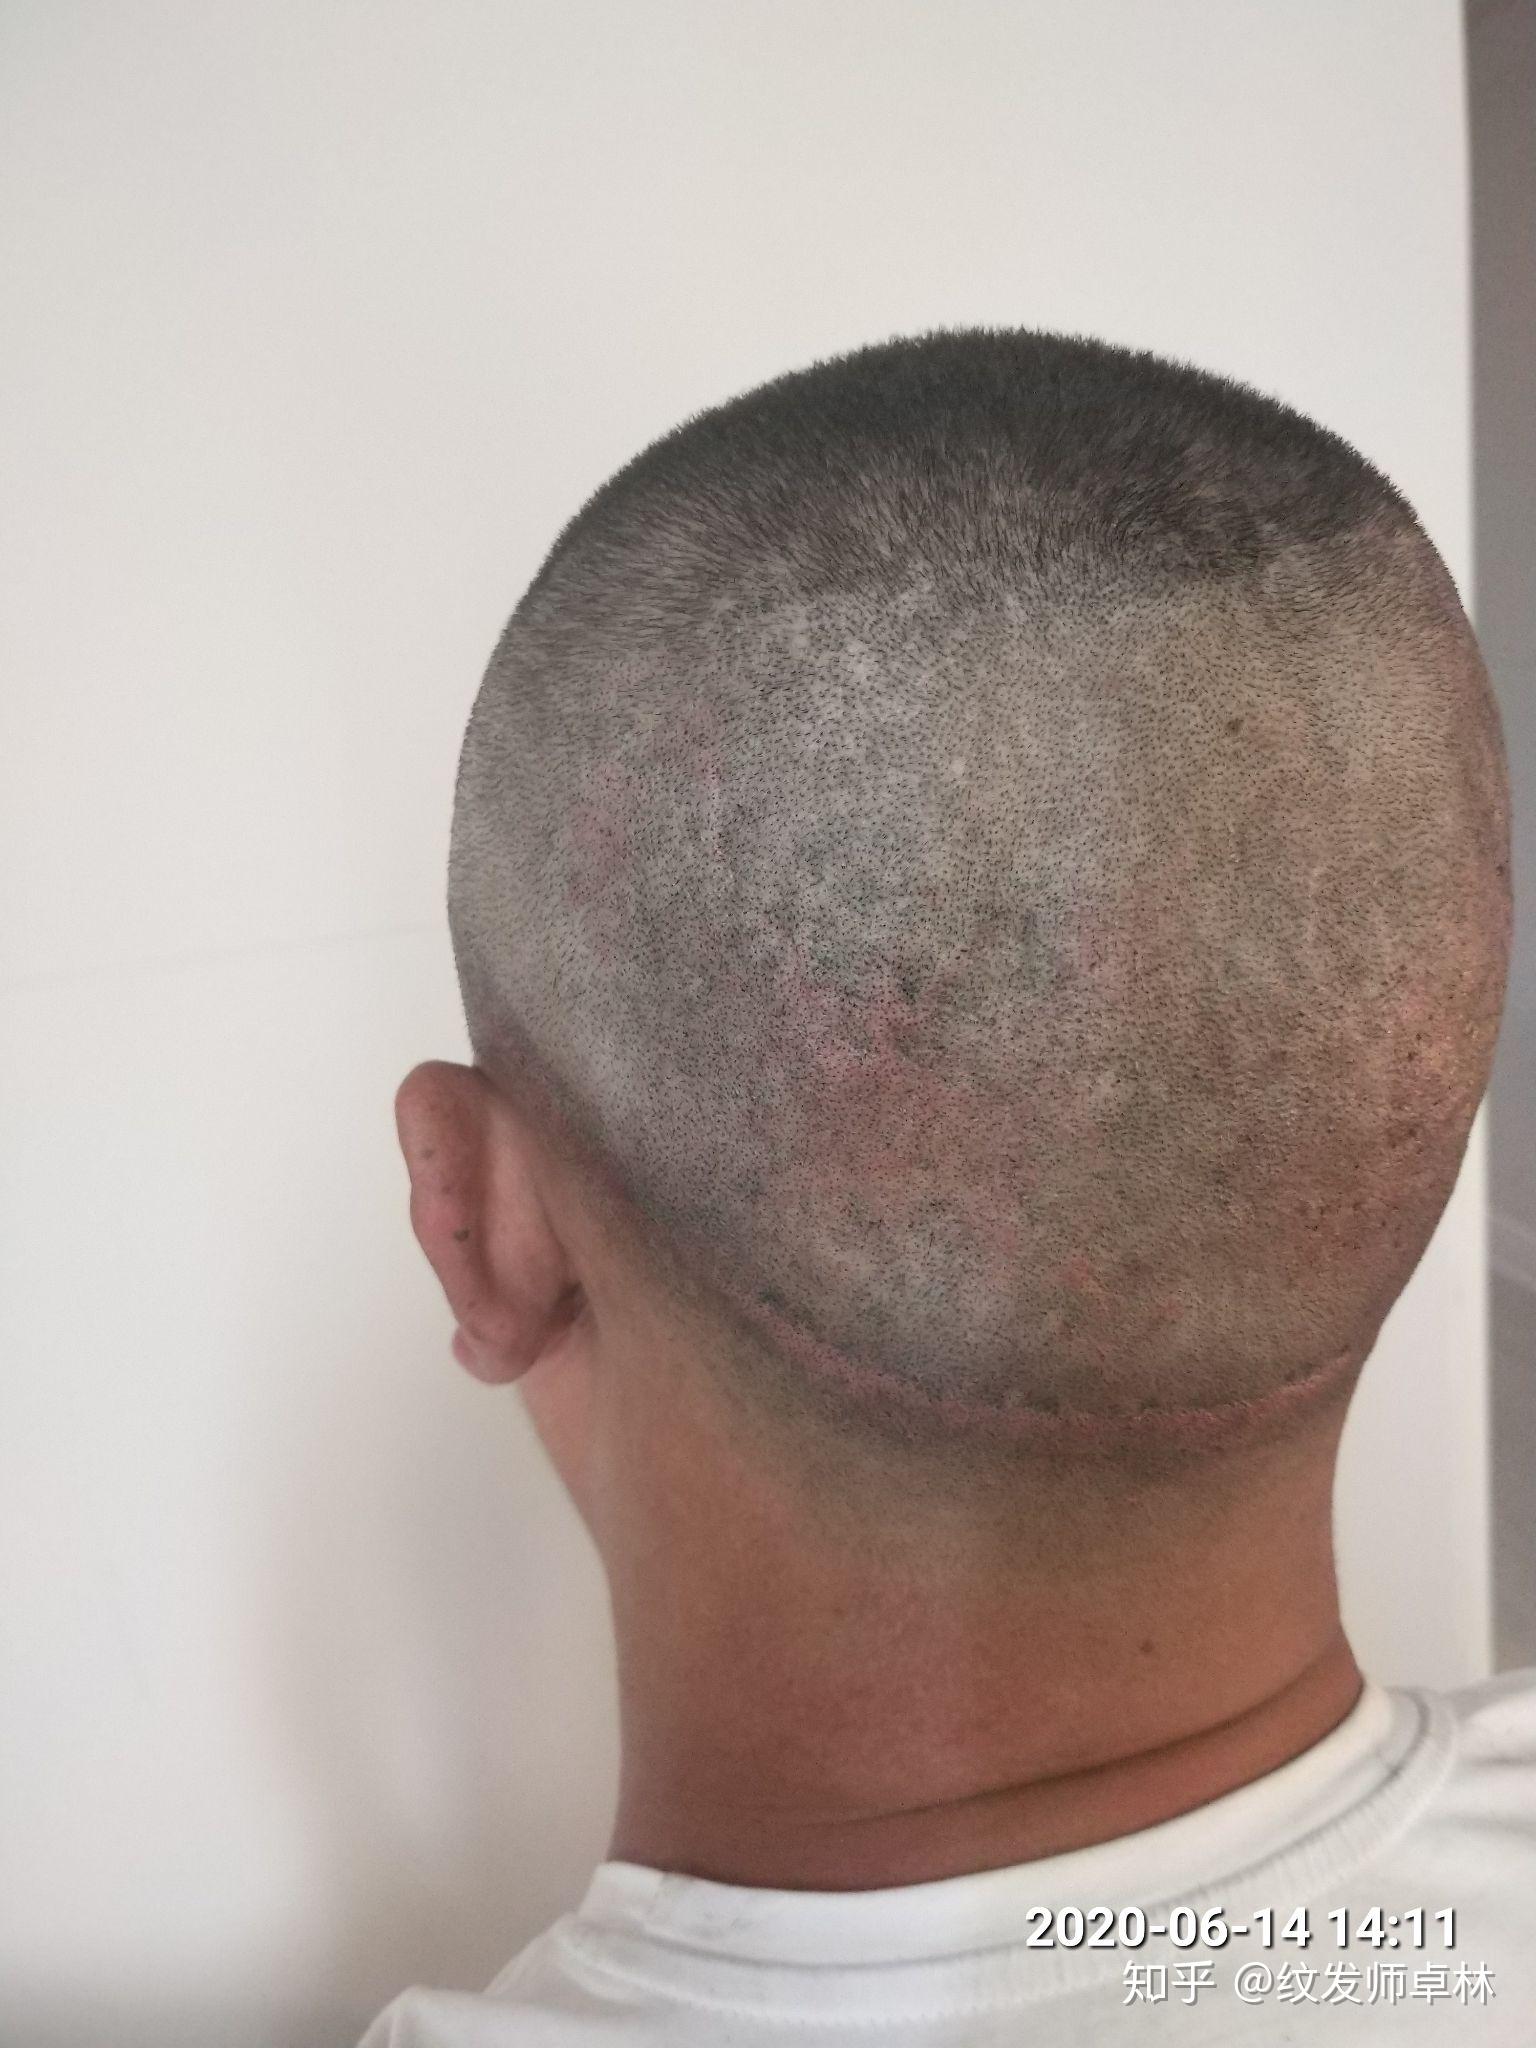 关于头部头皮大面积疤痕,如何以smp纹发技术有效掩盖修饰?